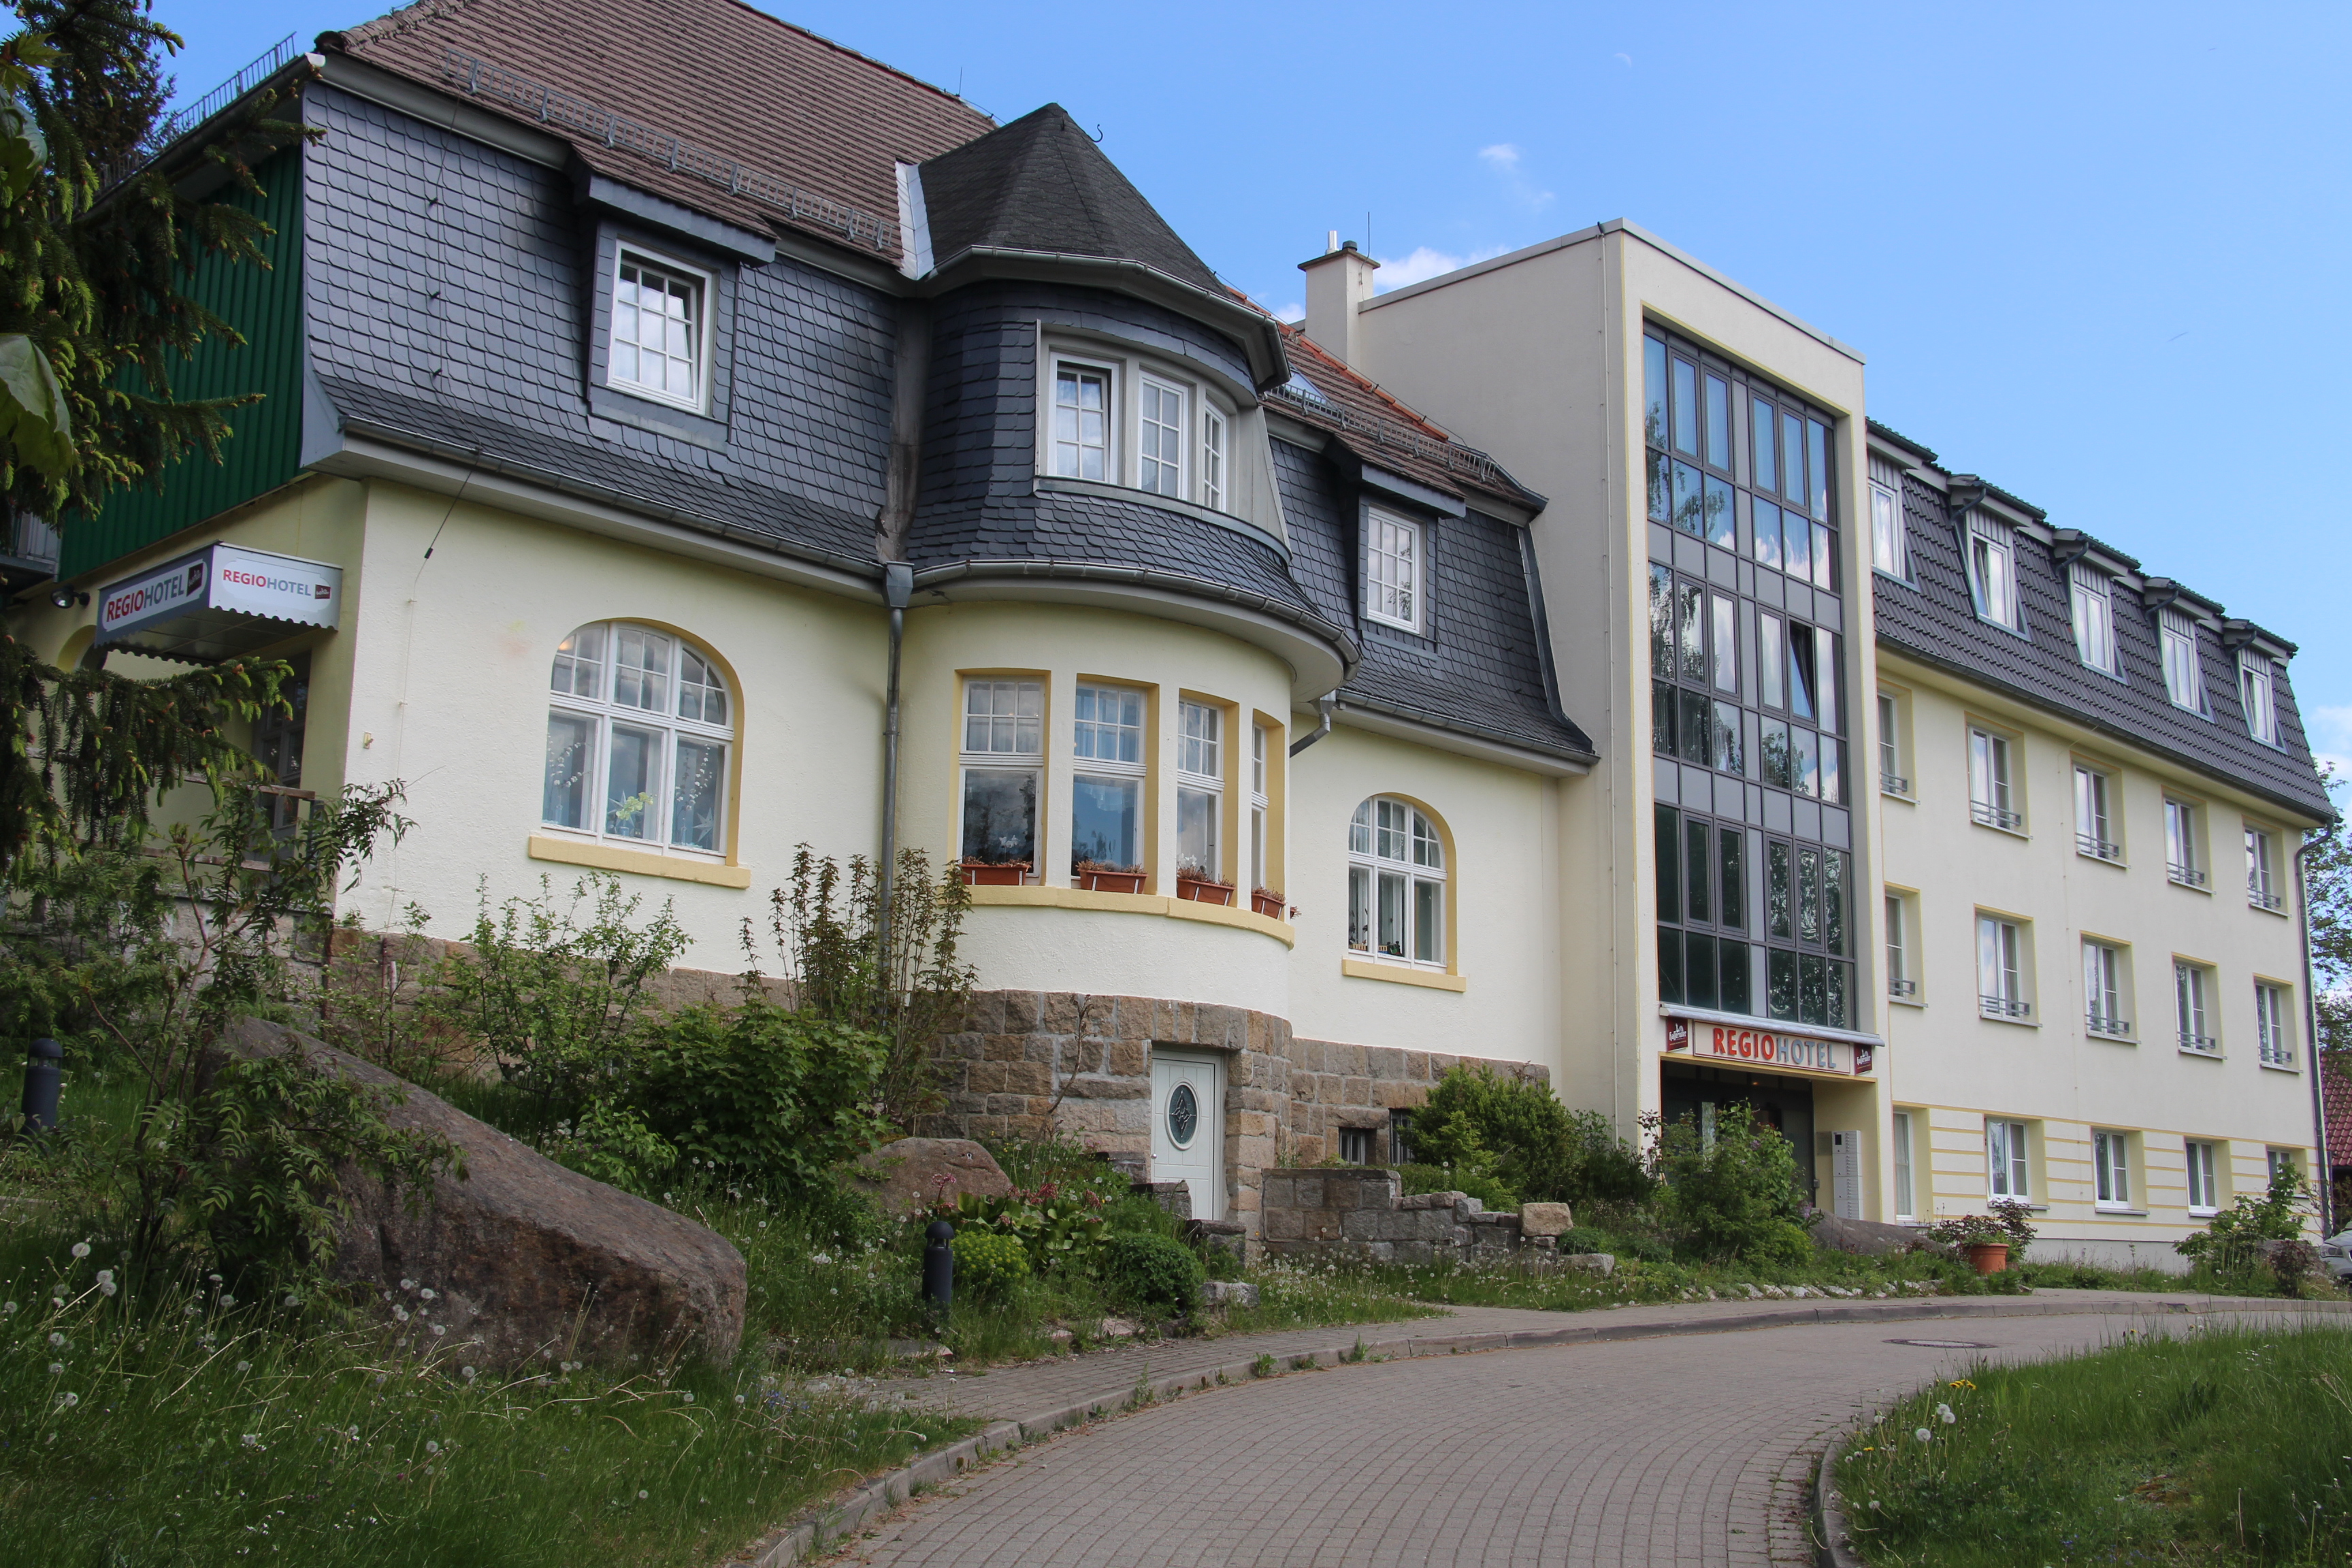 Wanderhotel "Am Brocken", Schierke hotel